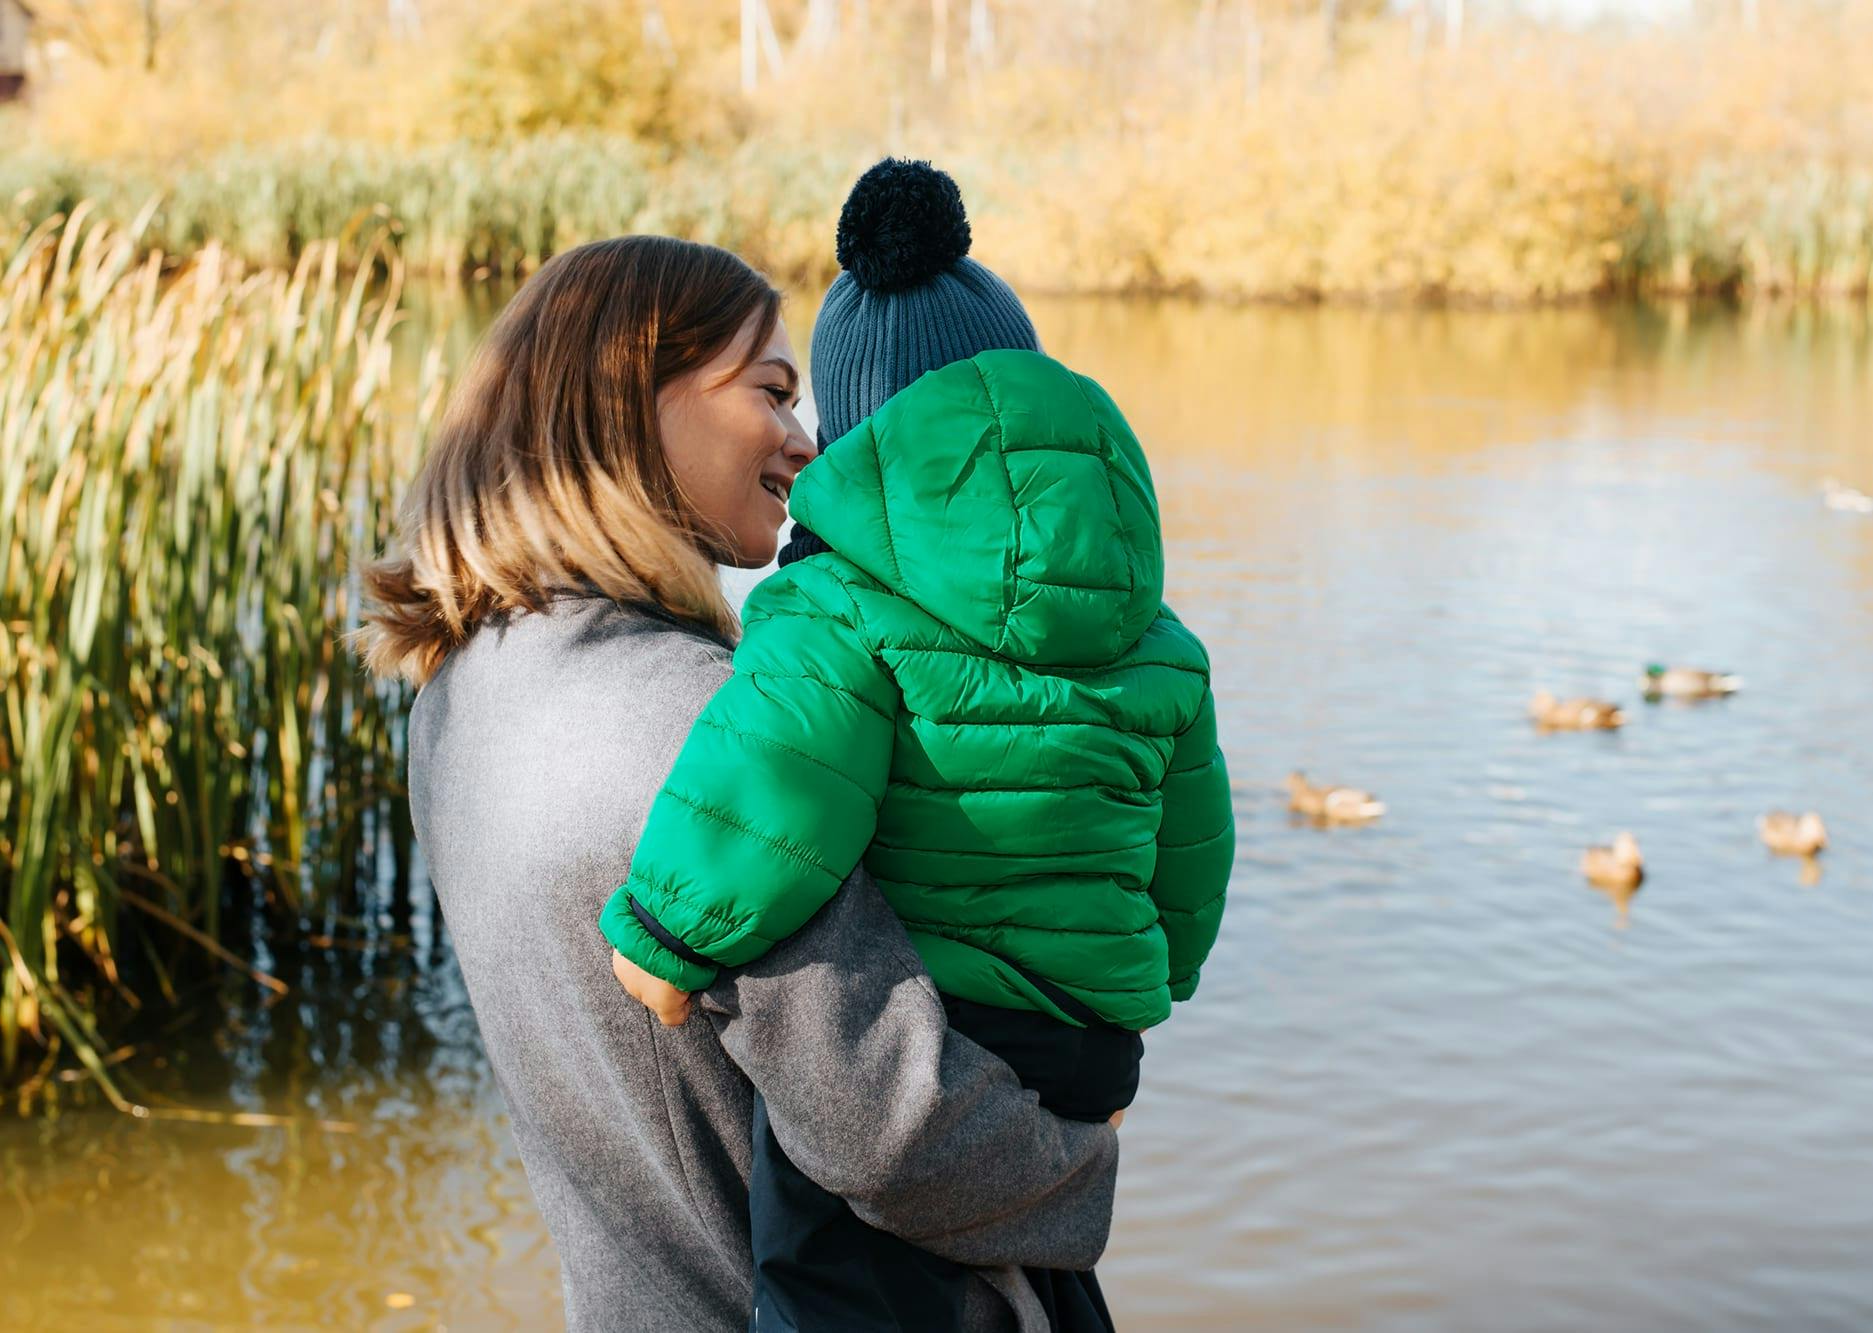 Vrouw staat met een kindje op de arm te kijken naar eendjes die in het water zwemmen